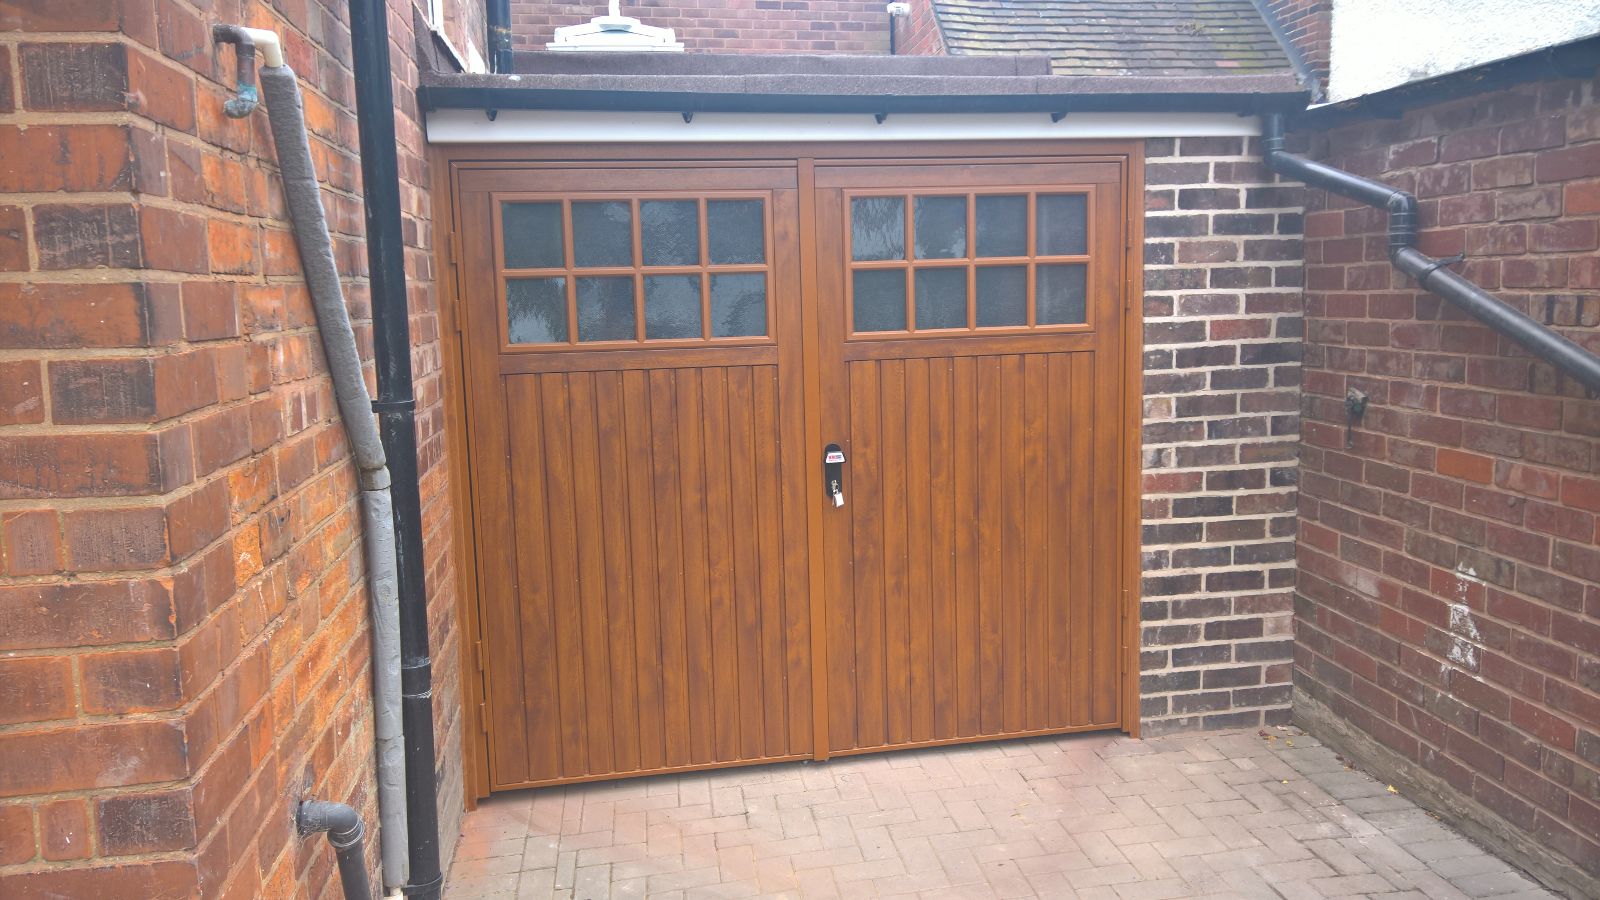 Steel Garage Doors Vs Wooden Garage Doors